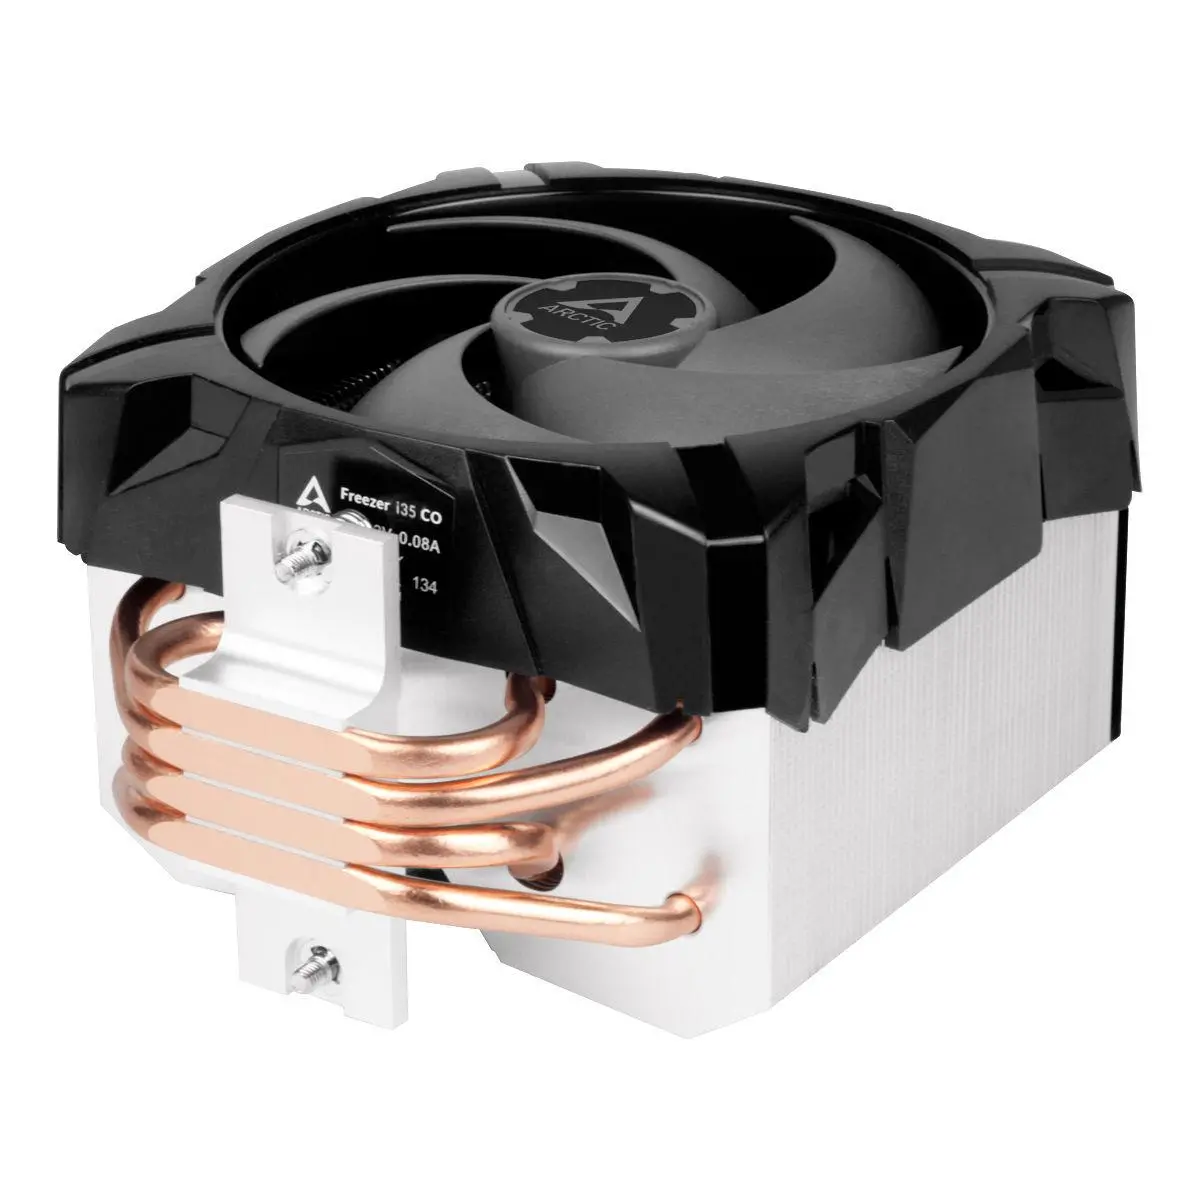 Охладител за процесор ARCTIC Freezer i35 CO Черен - image 4